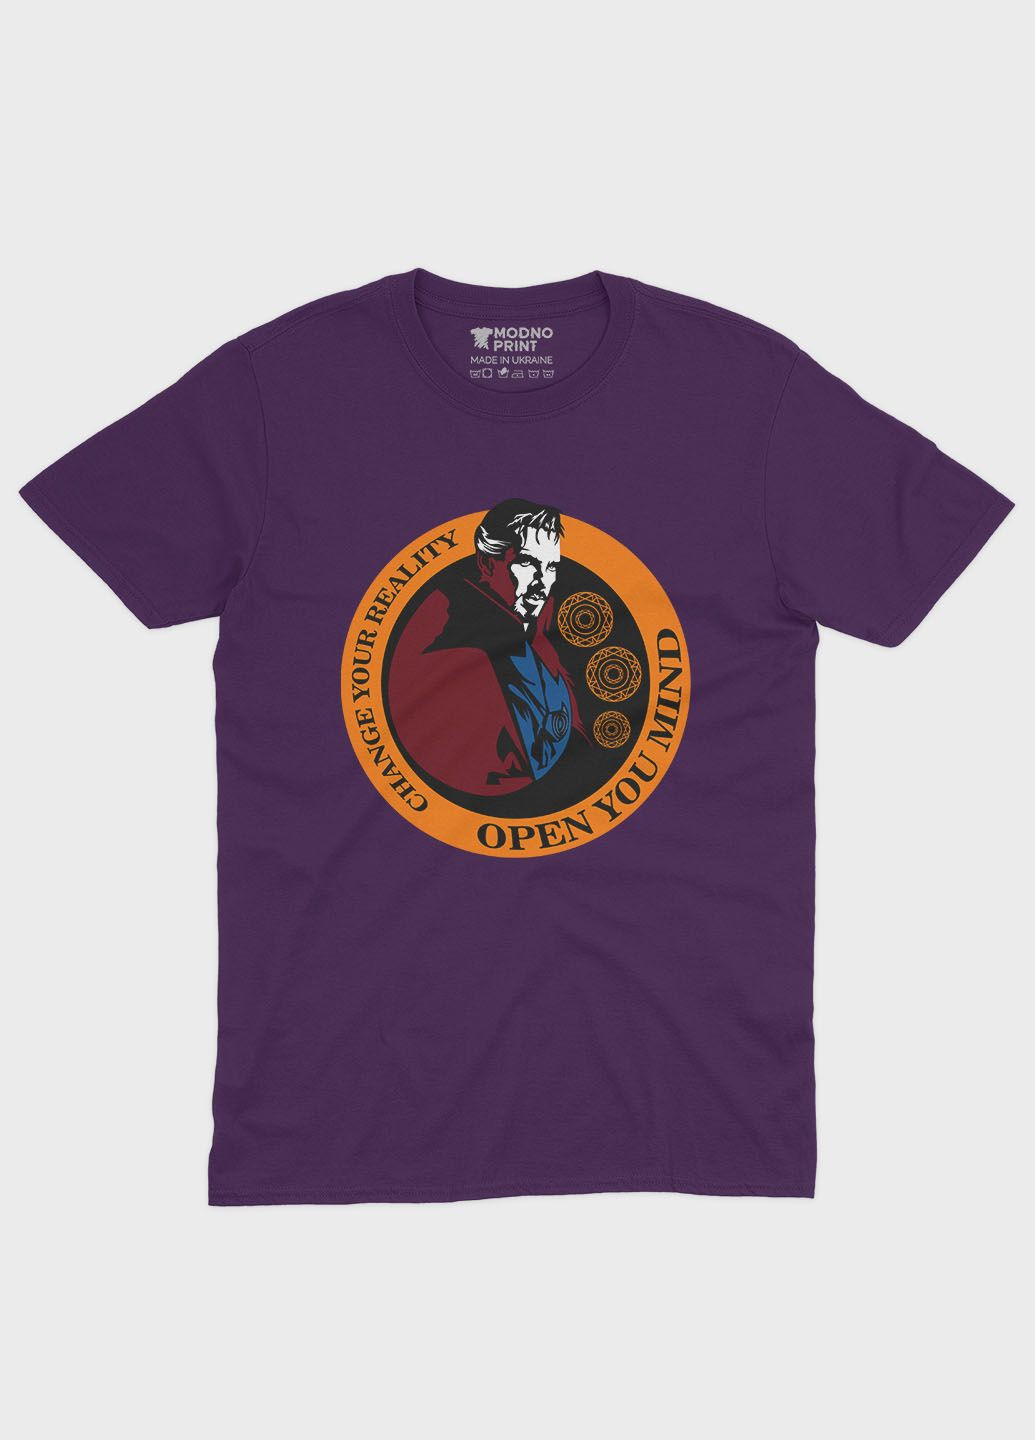 Фіолетова демісезонна футболка для хлопчика з принтом супергероя - доктор стрендж (ts001-1-dby-006-020-005-b) Modno